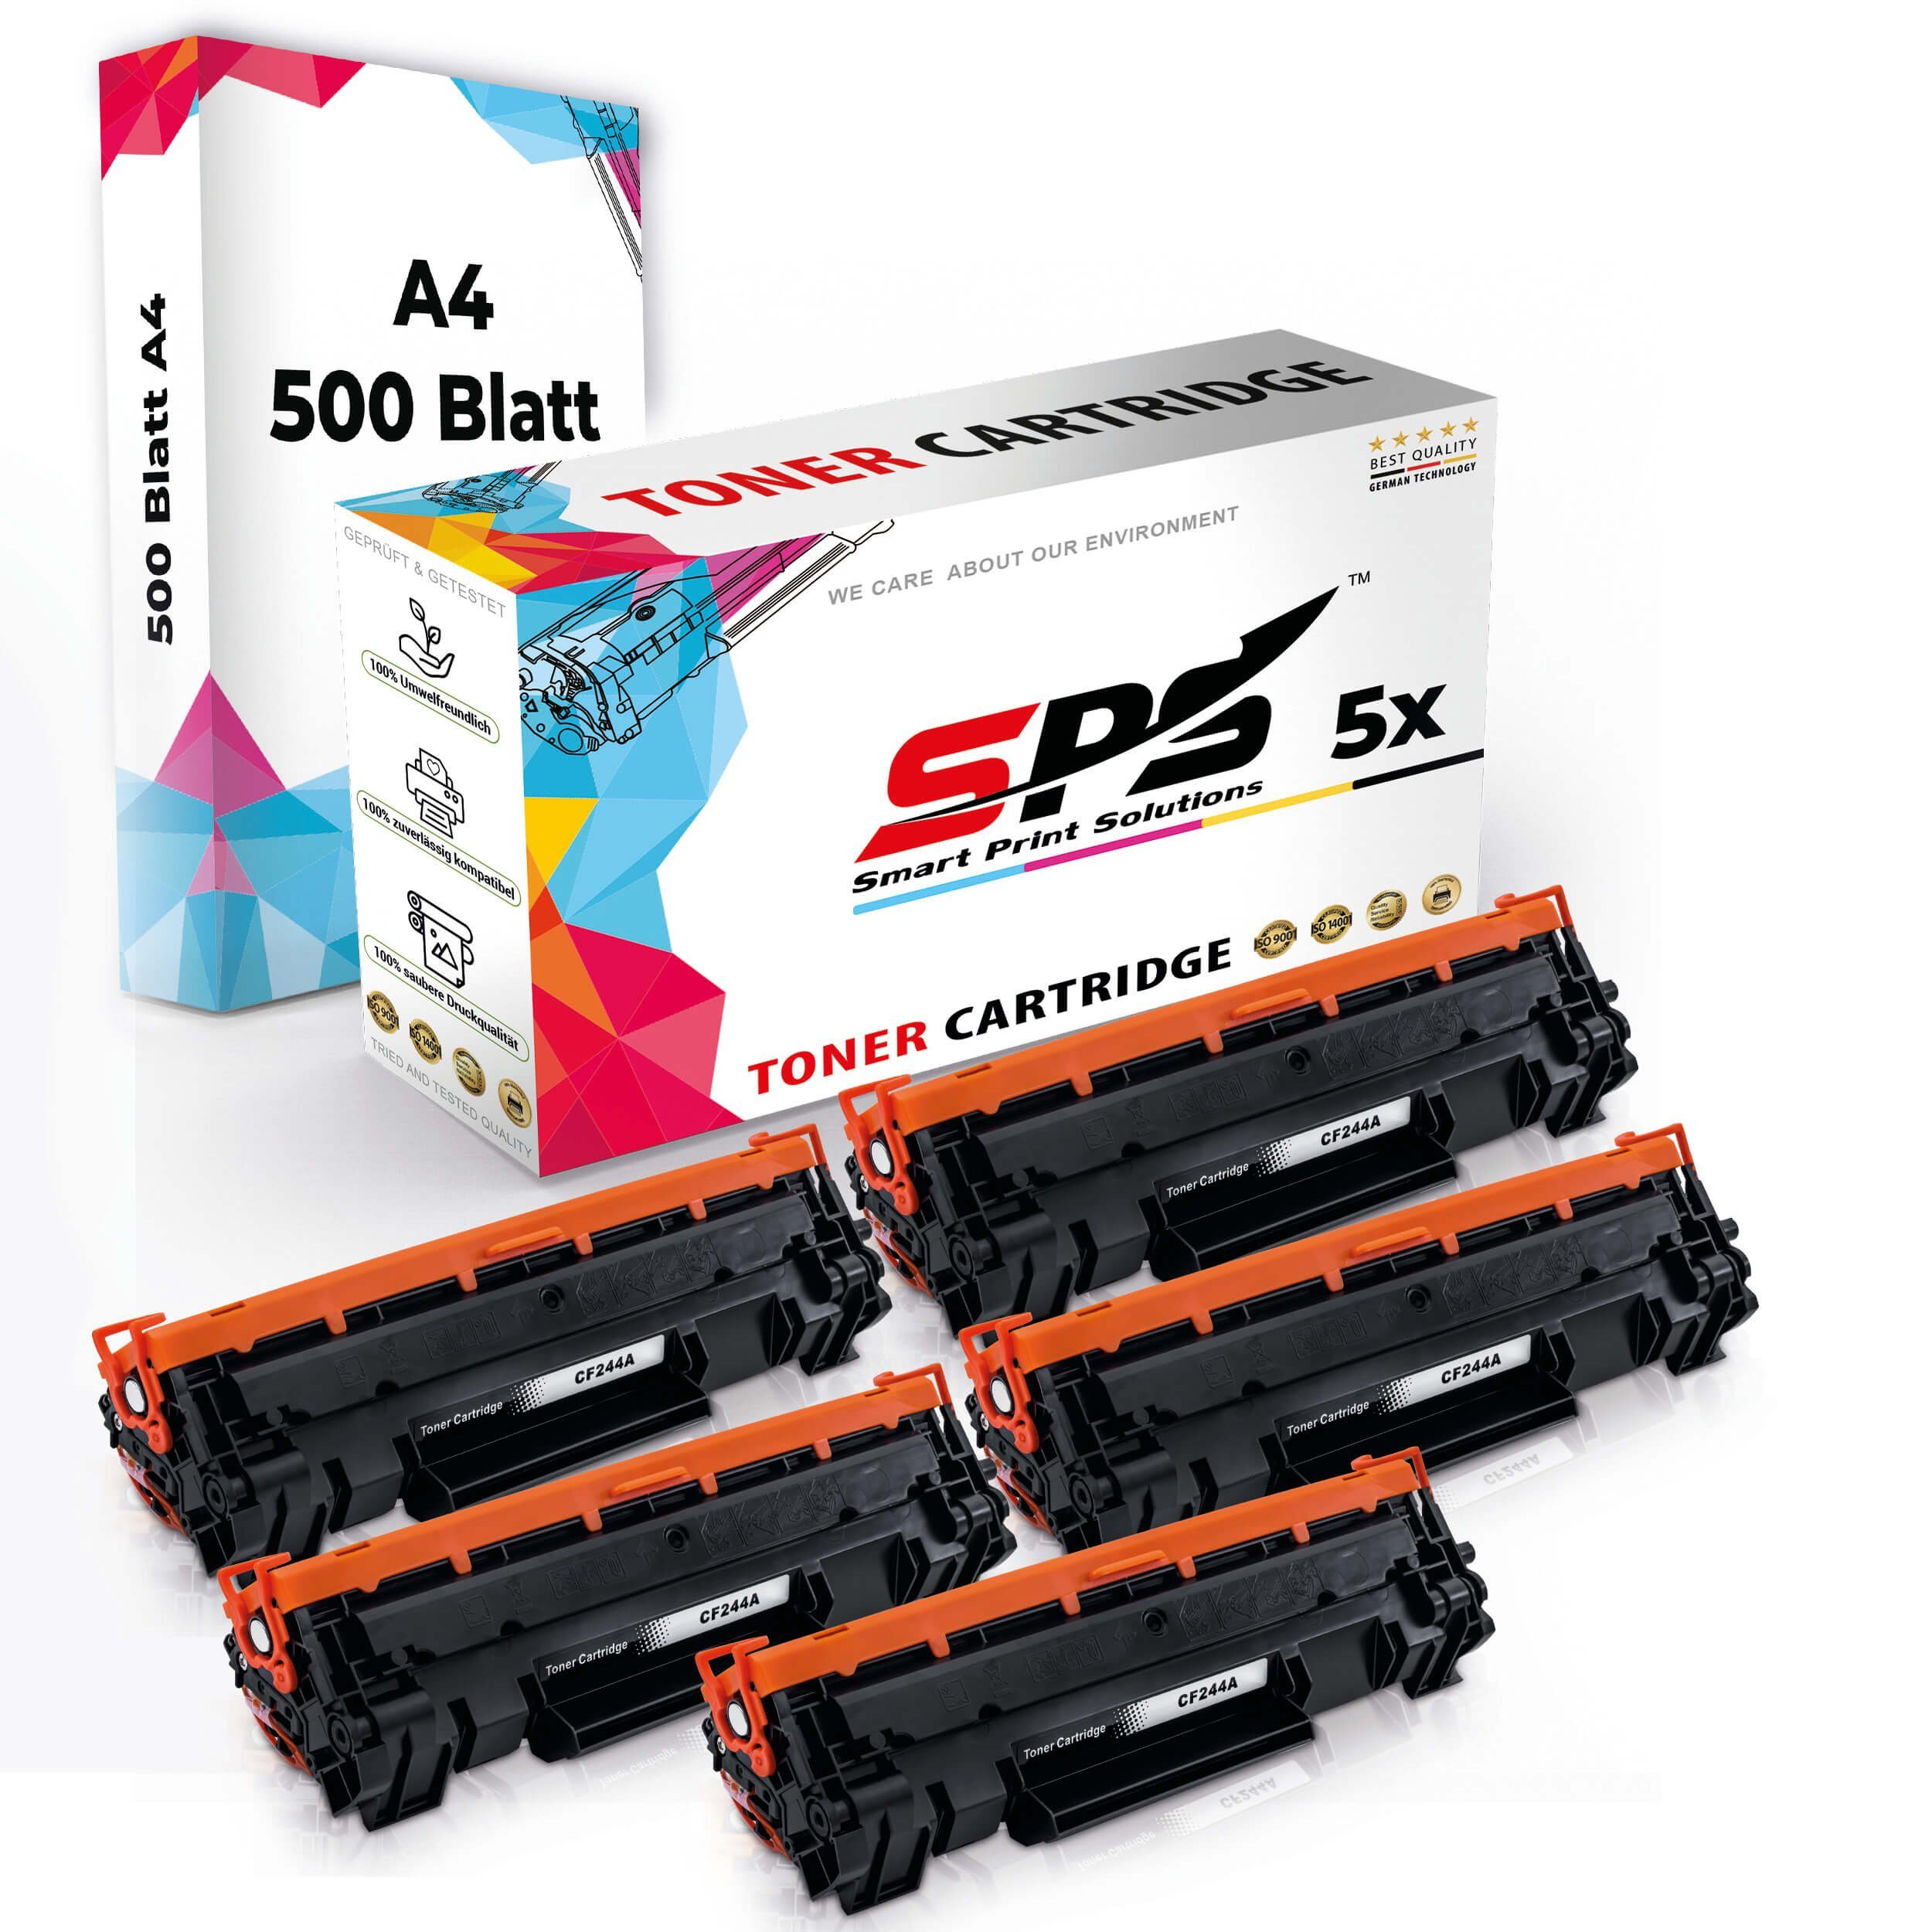 Multipack Pack, Druckerpapier Tonerkartusche Set (5er Druckerpapier) Toner,1x SPS A4 A4 5x Kompatibel, 5x +